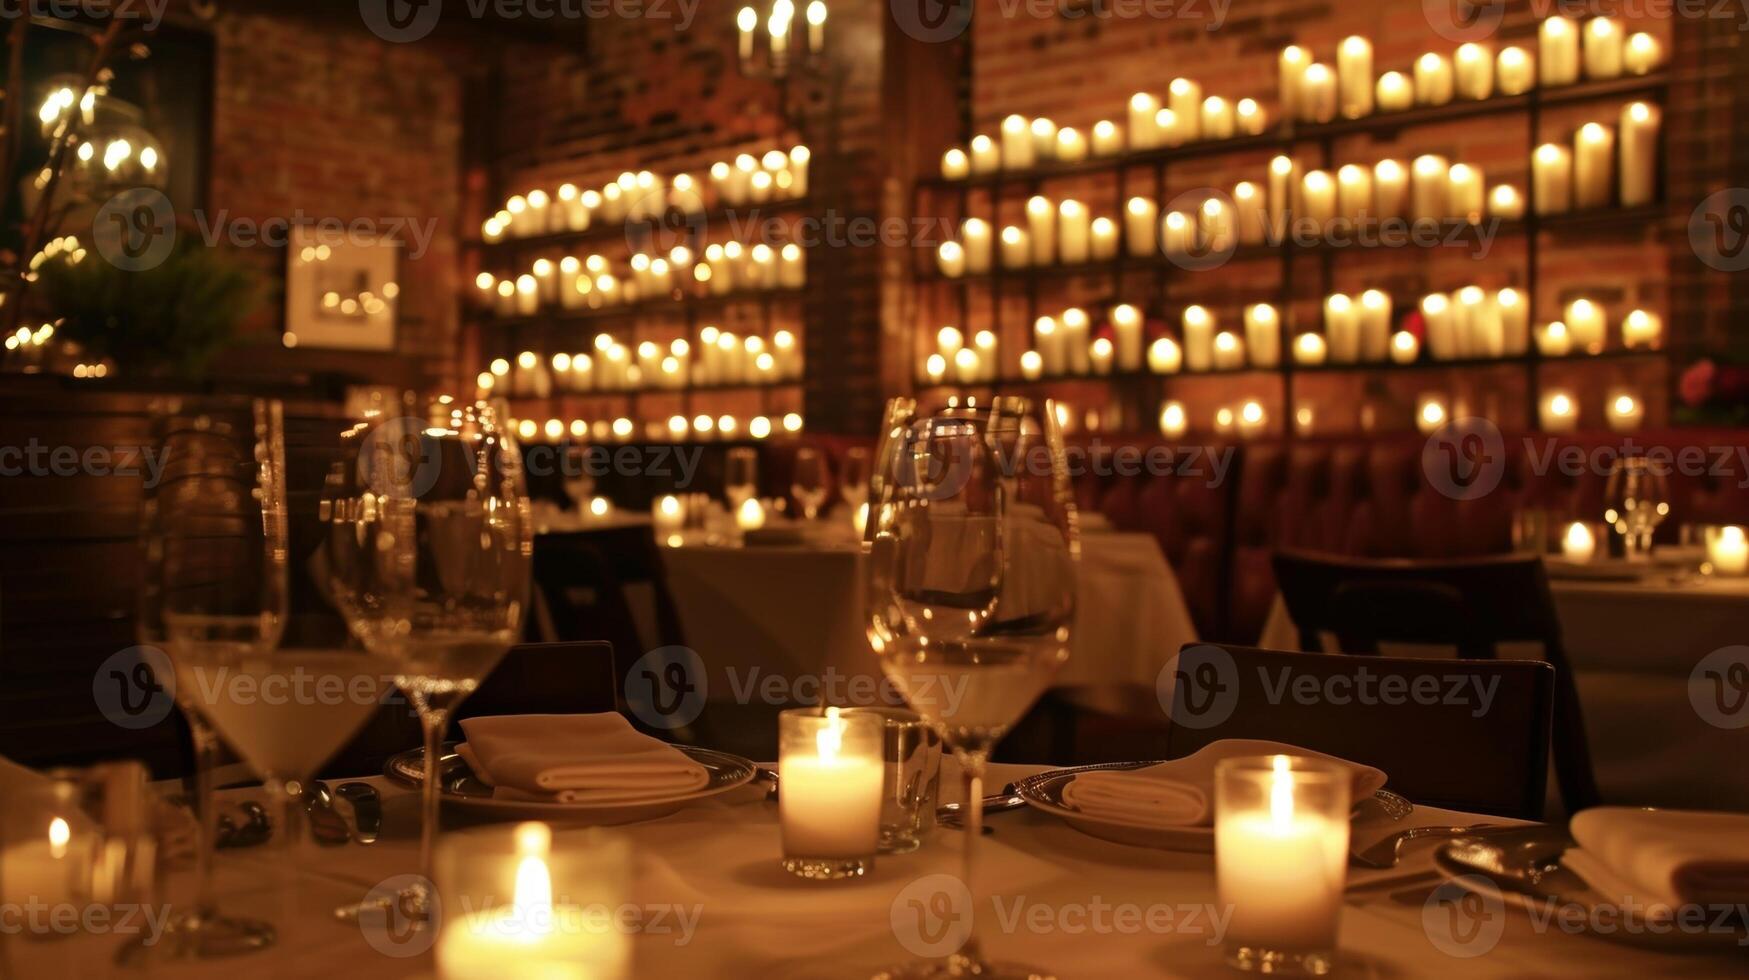 el votivo vela pared sirve como un maravilloso fondo para el romántico cena ajuste. 2d plano dibujos animados foto